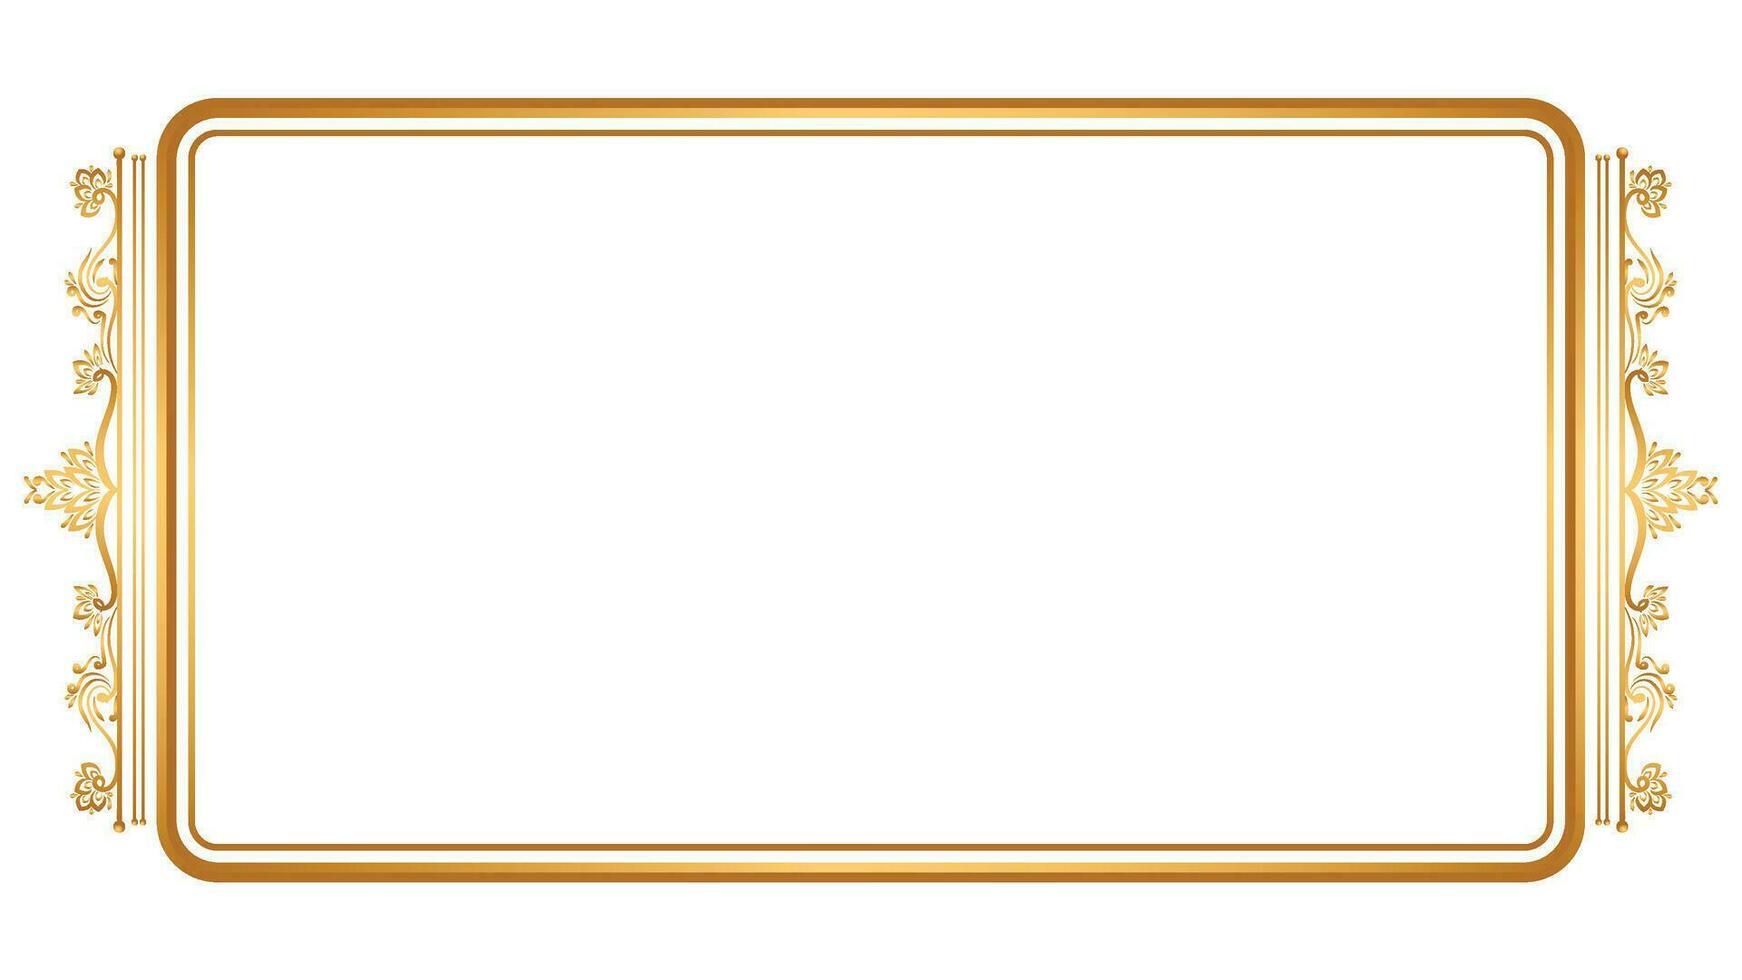 lujo dorado rectángulo esquina certificado frontera modelo línea foto tailandés marco islámico Boda invitación antecedentes vector